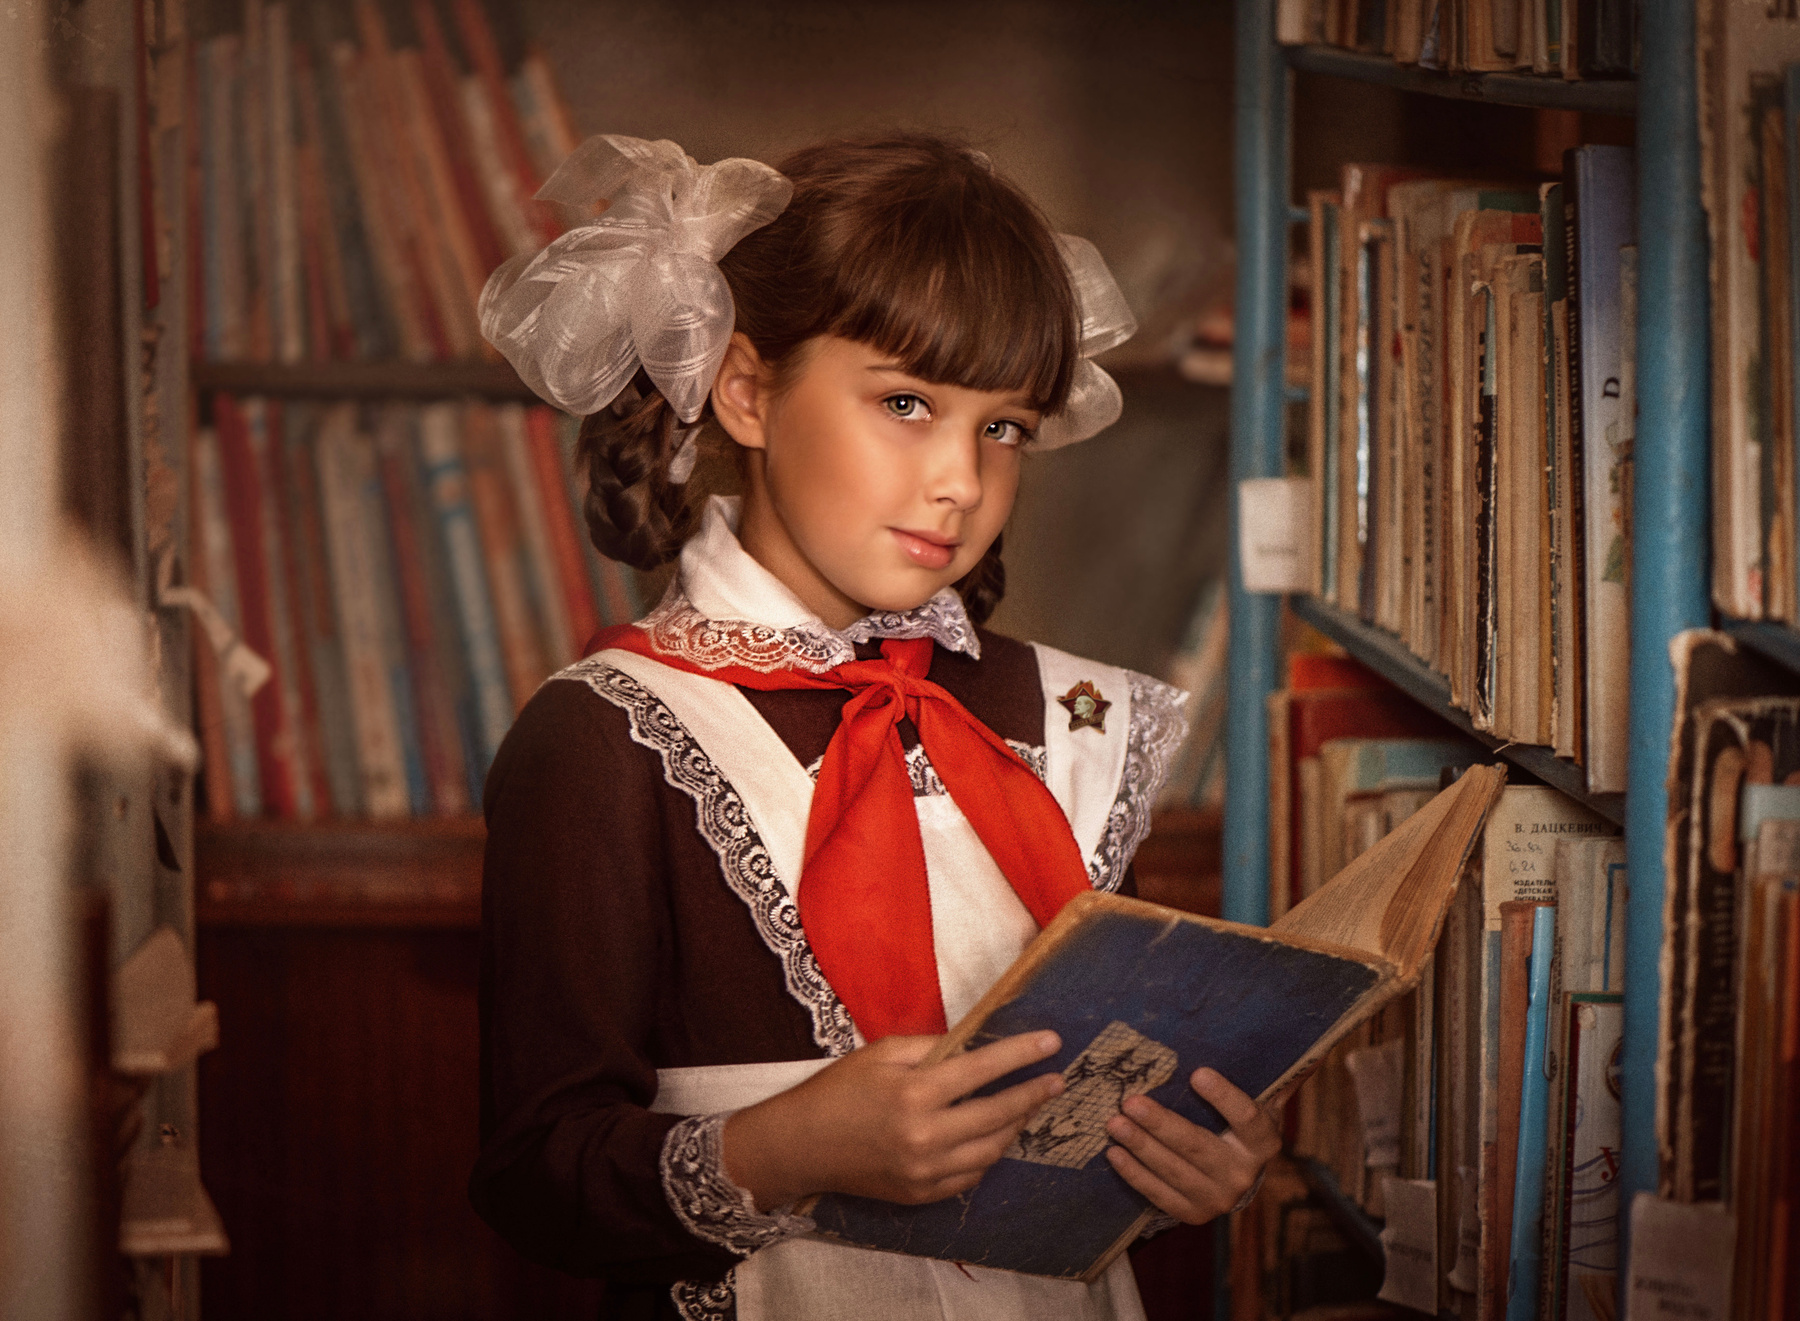 Школьница времён СССР Школа ссср Советский Союз портрет школьница ретро